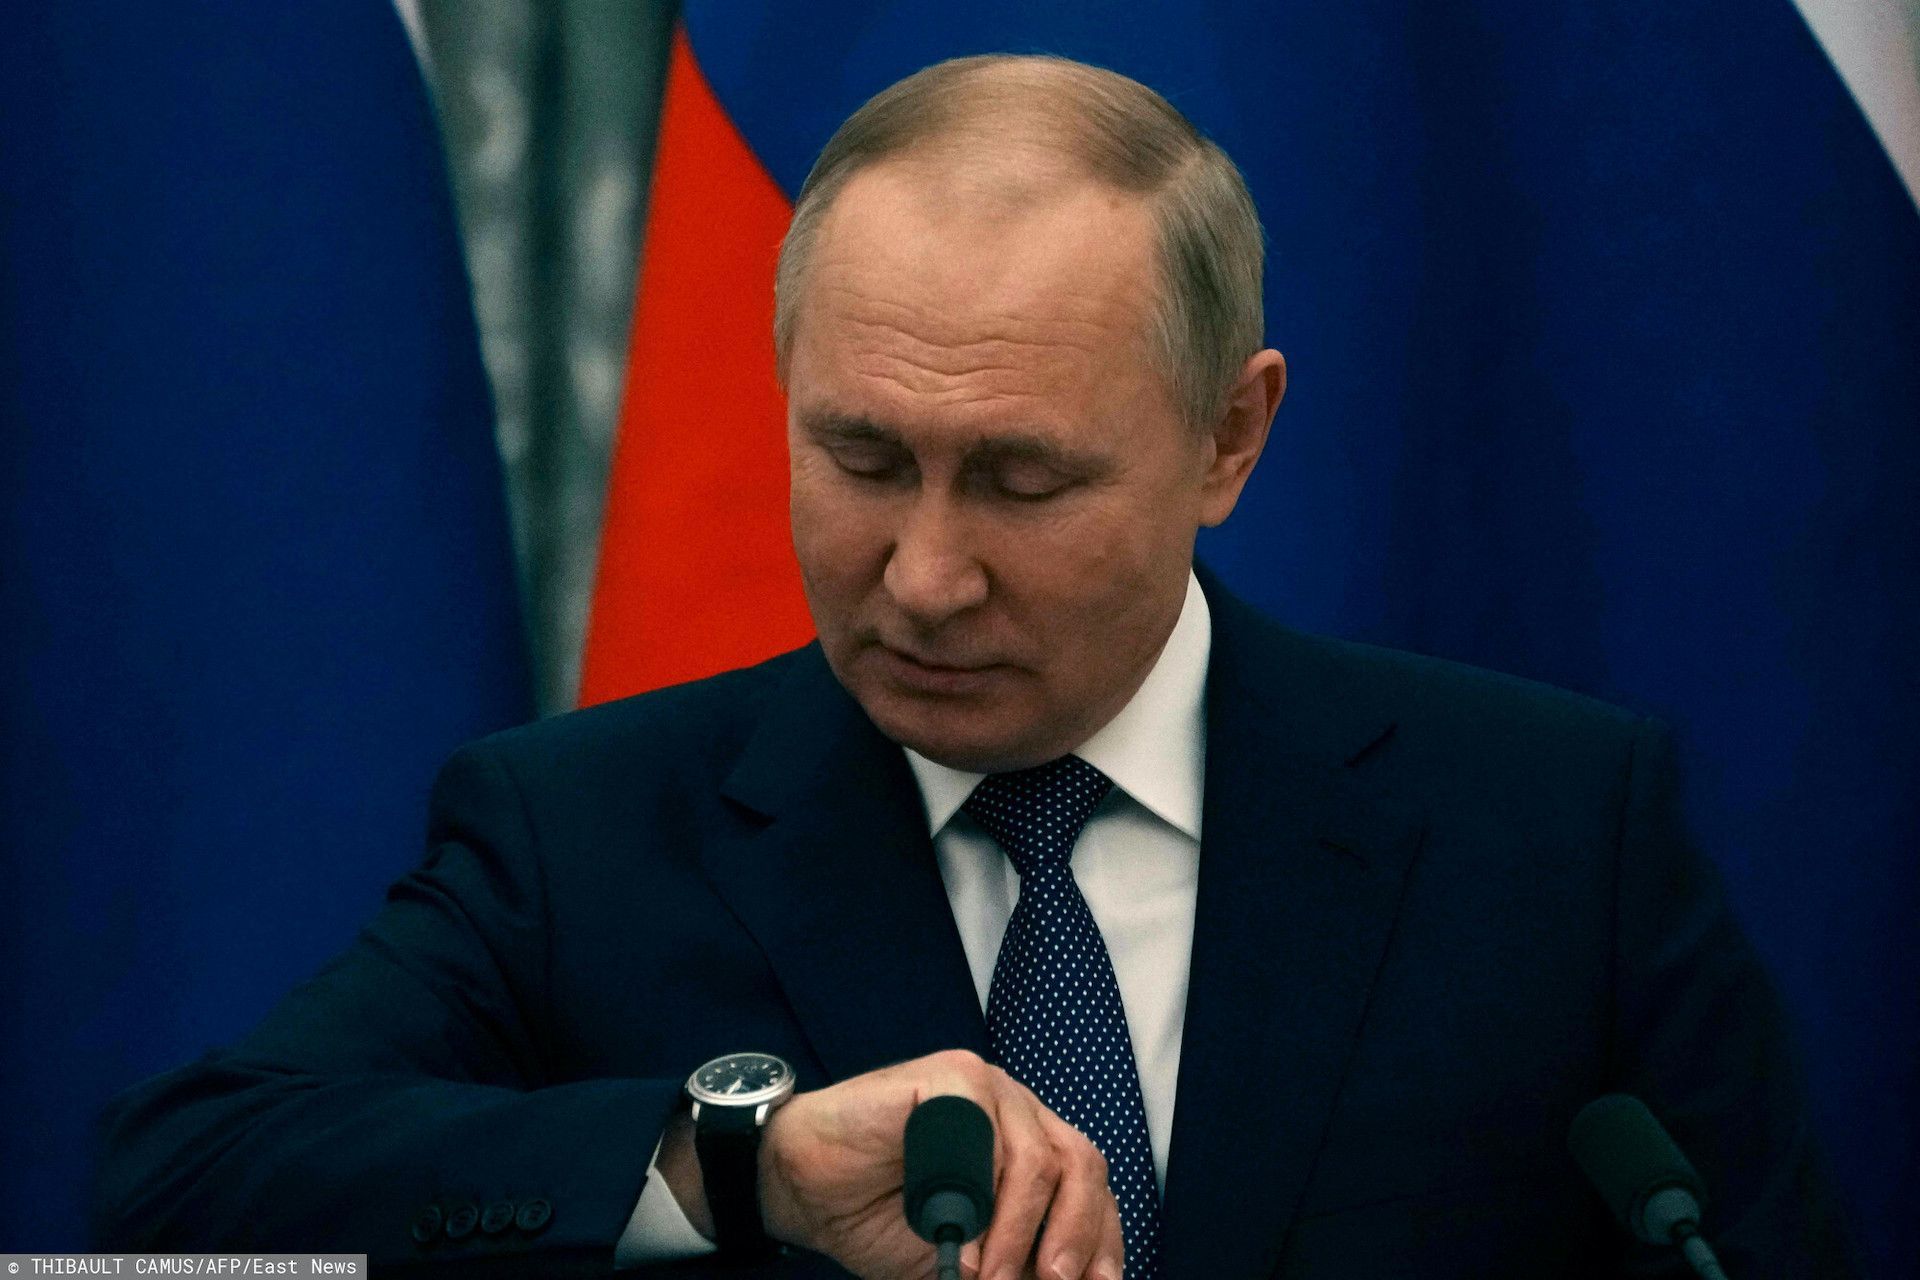 Zamach na Władimira Putina to tylko kwestia czasu? Ekspert uważa, że prezydent Rosji samo podpisał na siebie wyrok śmierci